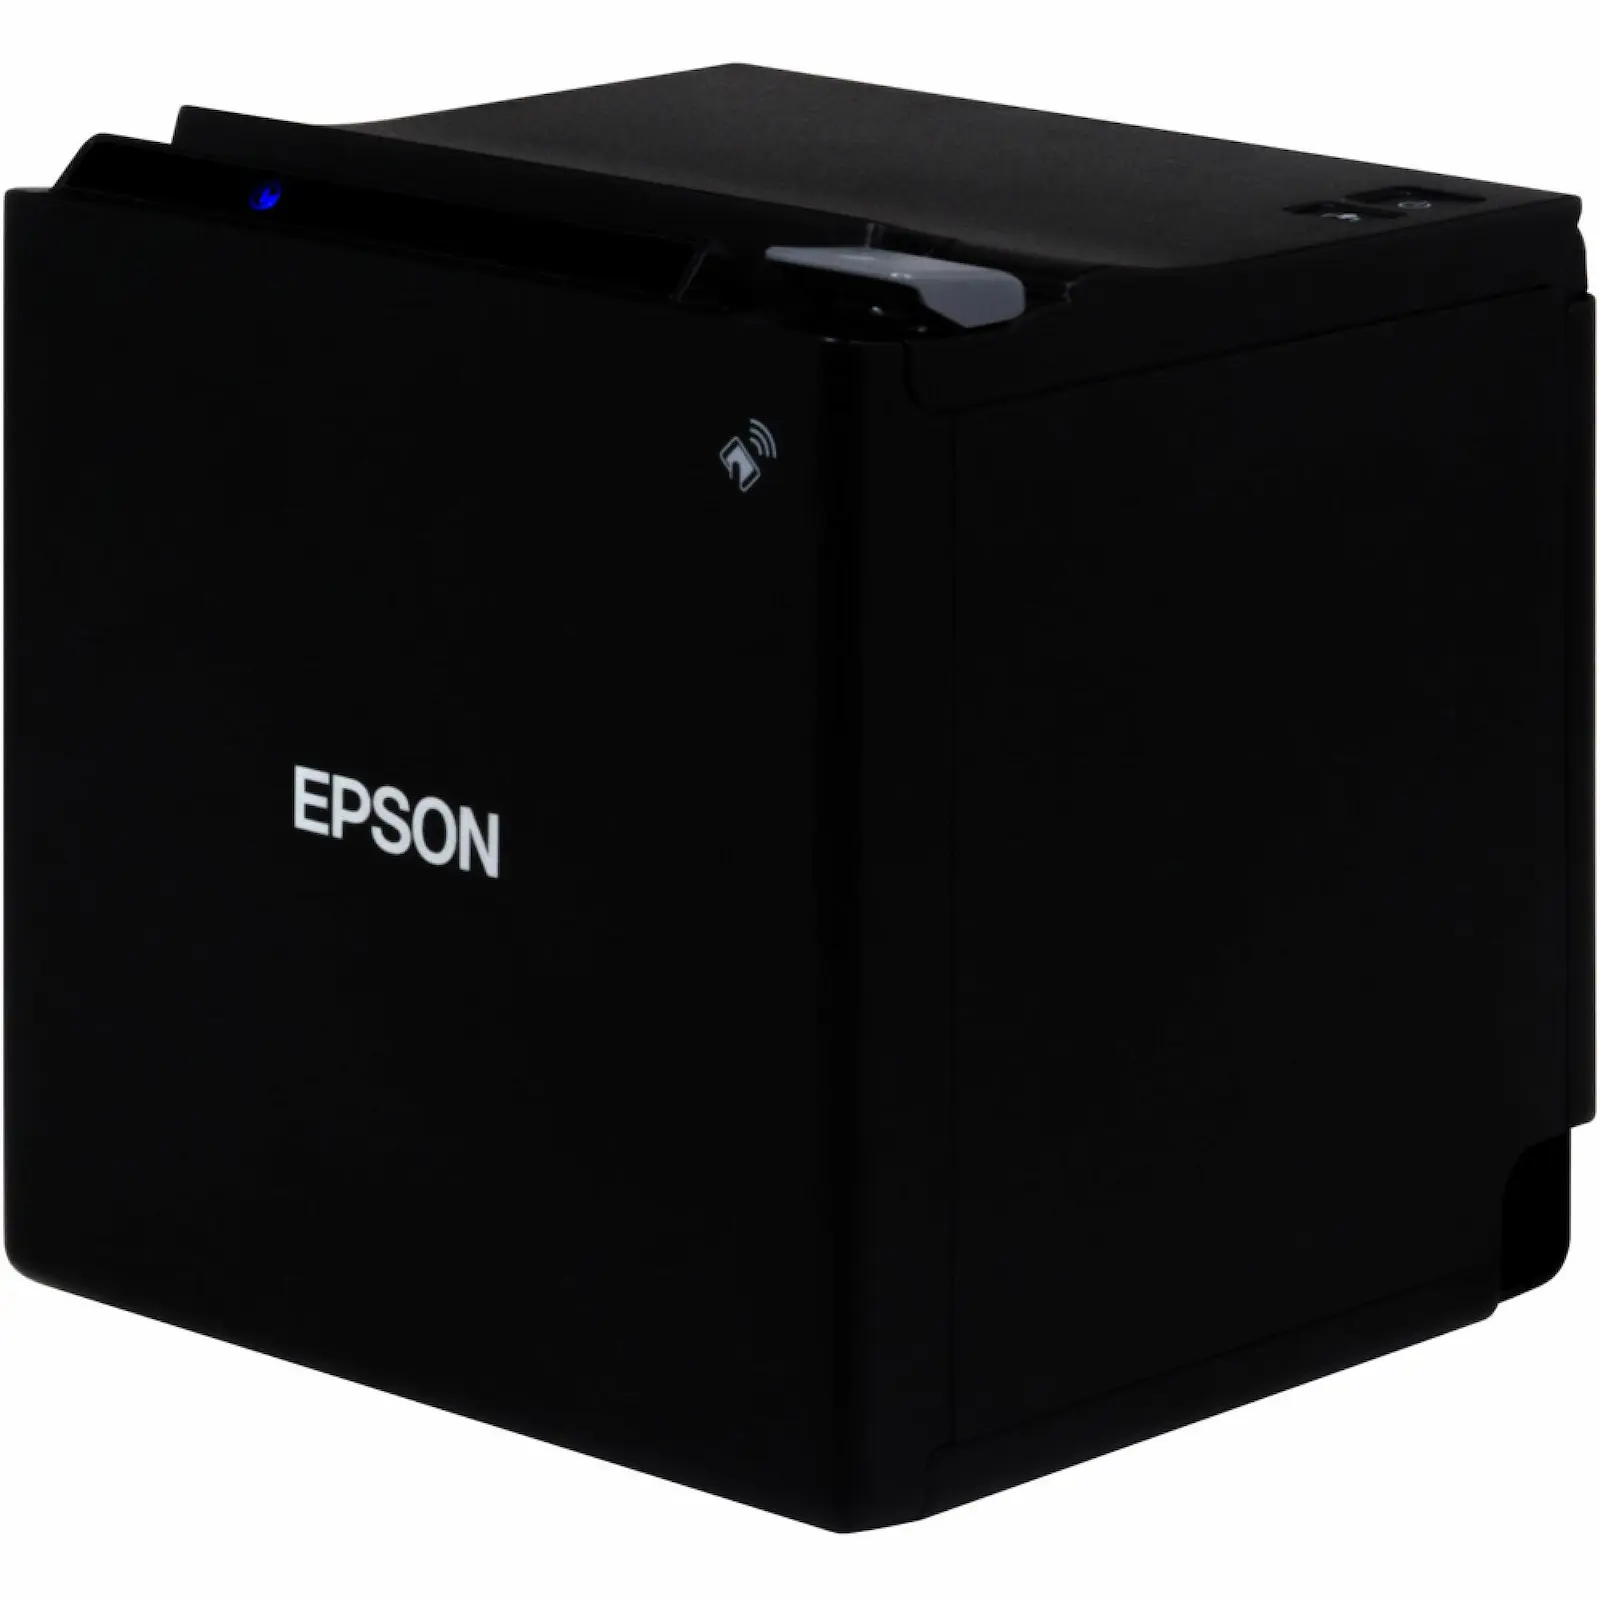 Epson Bondrucker TM-m30II mit Ethernet & USB Anschlüssen in Schwarz von vorne-rechts